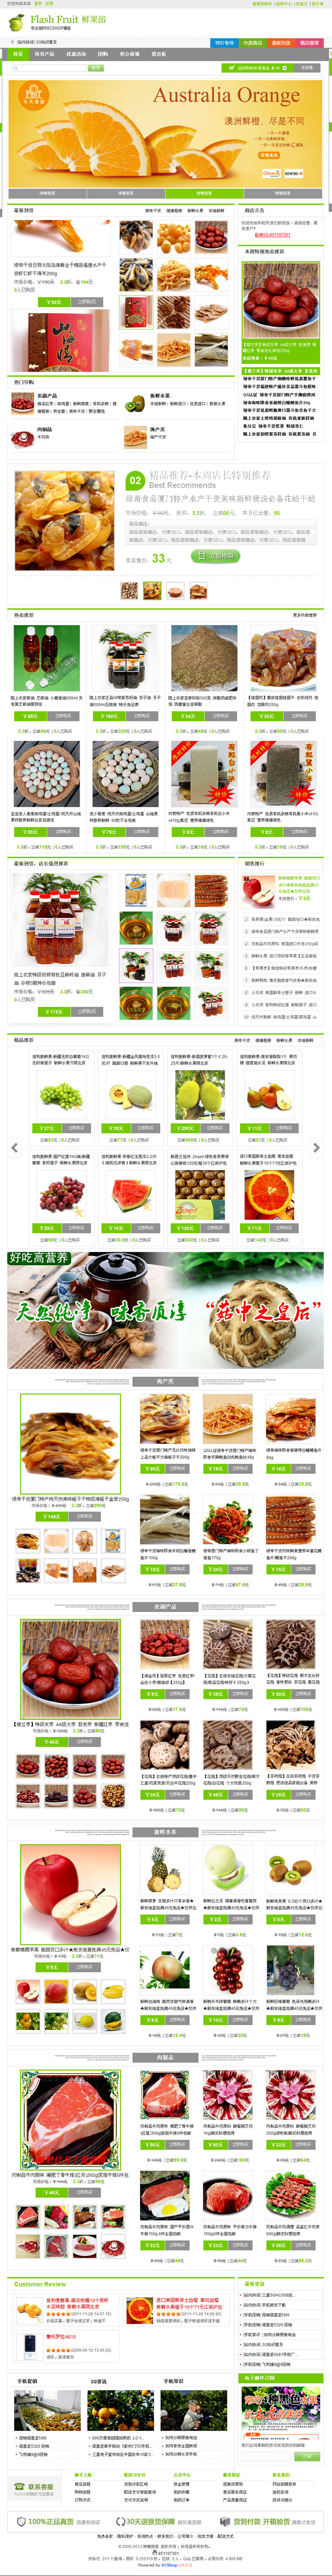 蔬菜水果网站模板 ecshop2.7.3模板鲜果农产品商城模板源码带数据 